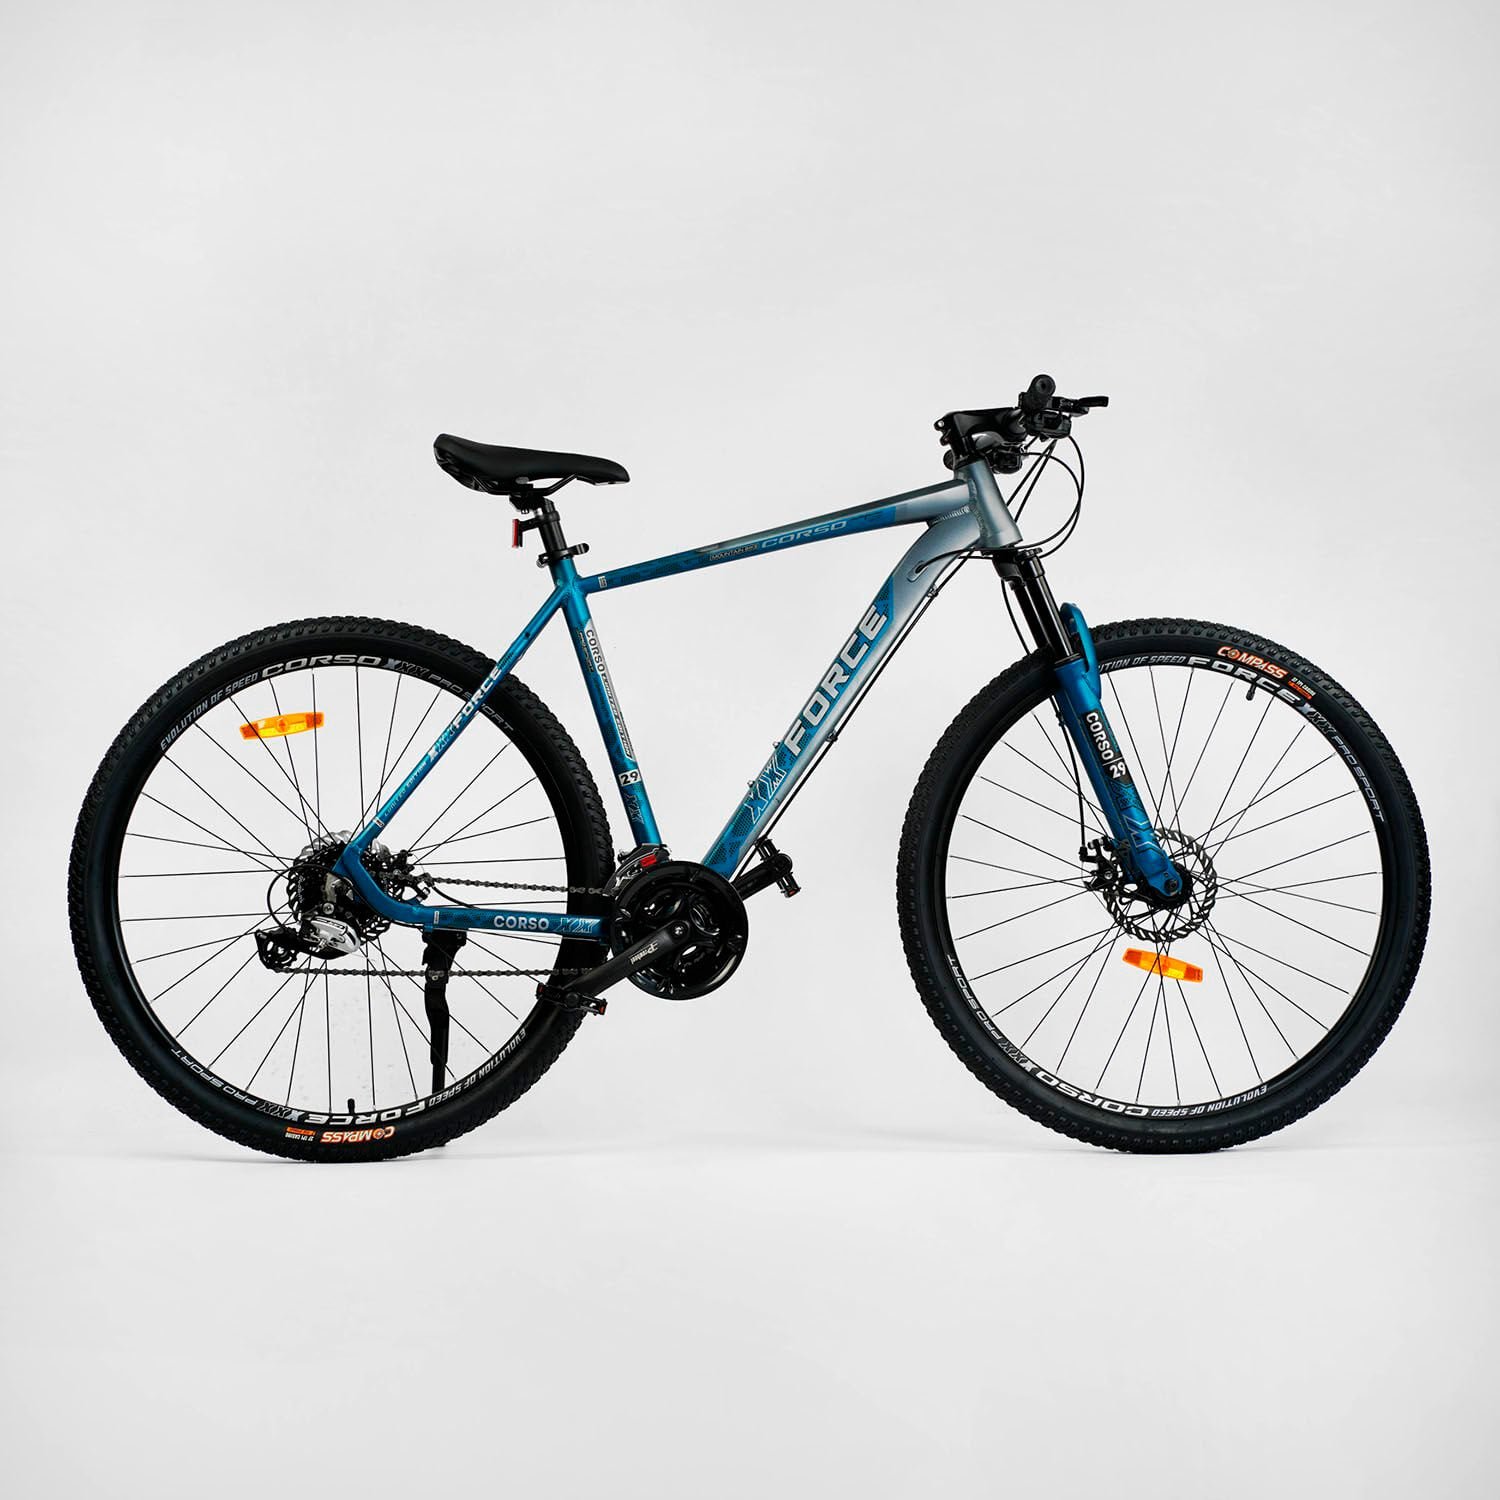 Велосипед Спортивный Corso "X-Force" 29" (XR-29618) рама алюминиевая 21", оборудование Shimano Altus, 24 скорости, вилка MOMA